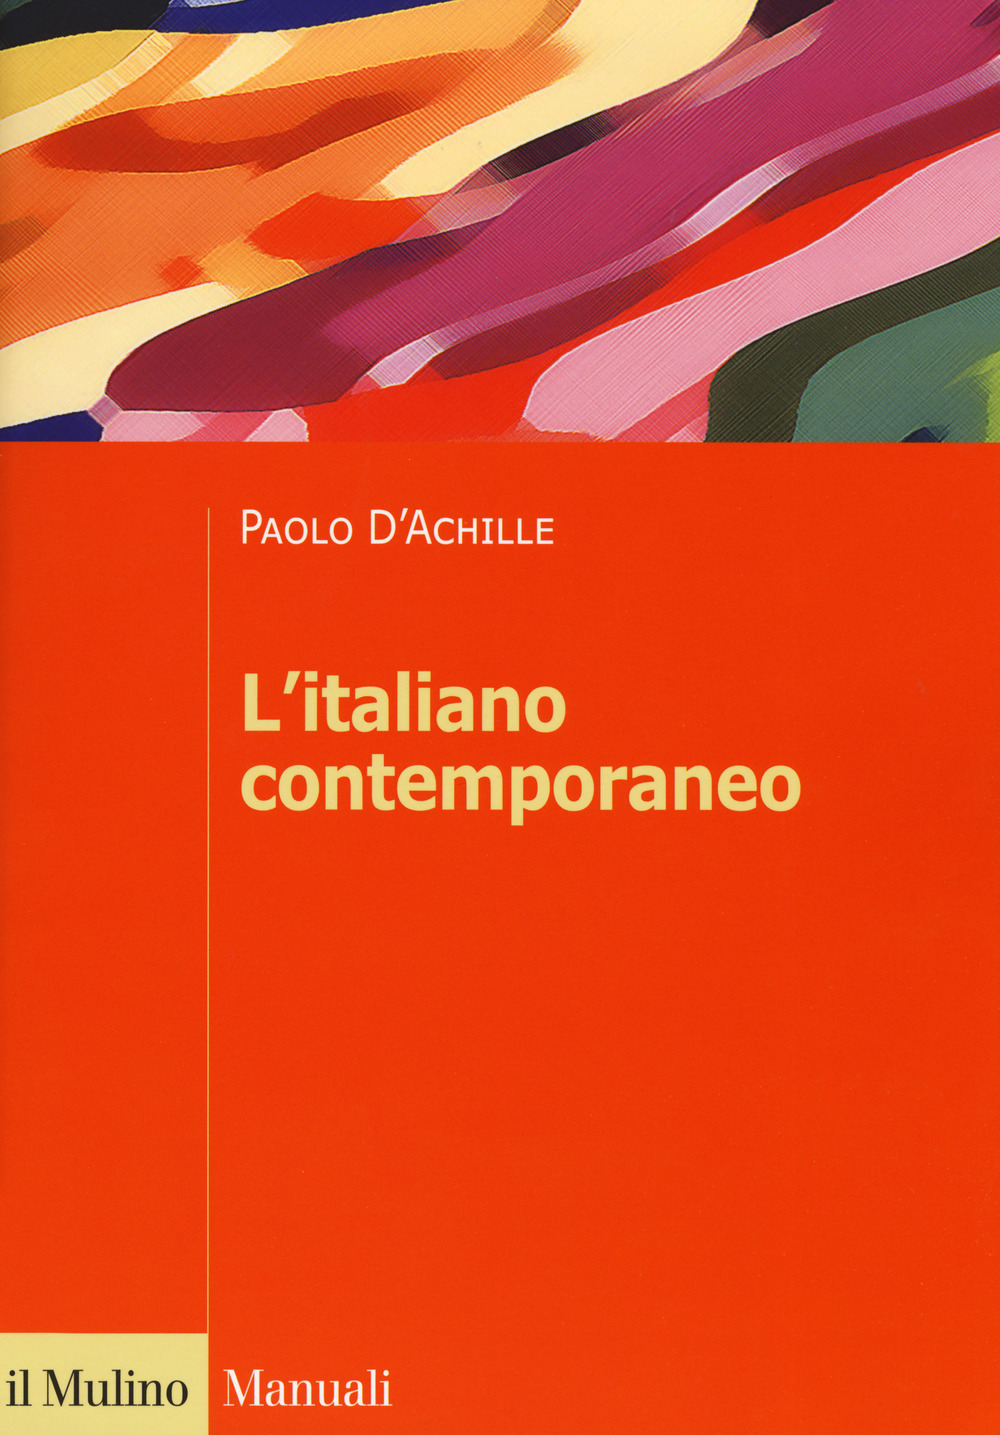 Libri Paolo D'Achille - L' Italiano Contemporaneo NUOVO SIGILLATO, EDIZIONE DEL 19/10/2019 SUBITO DISPONIBILE